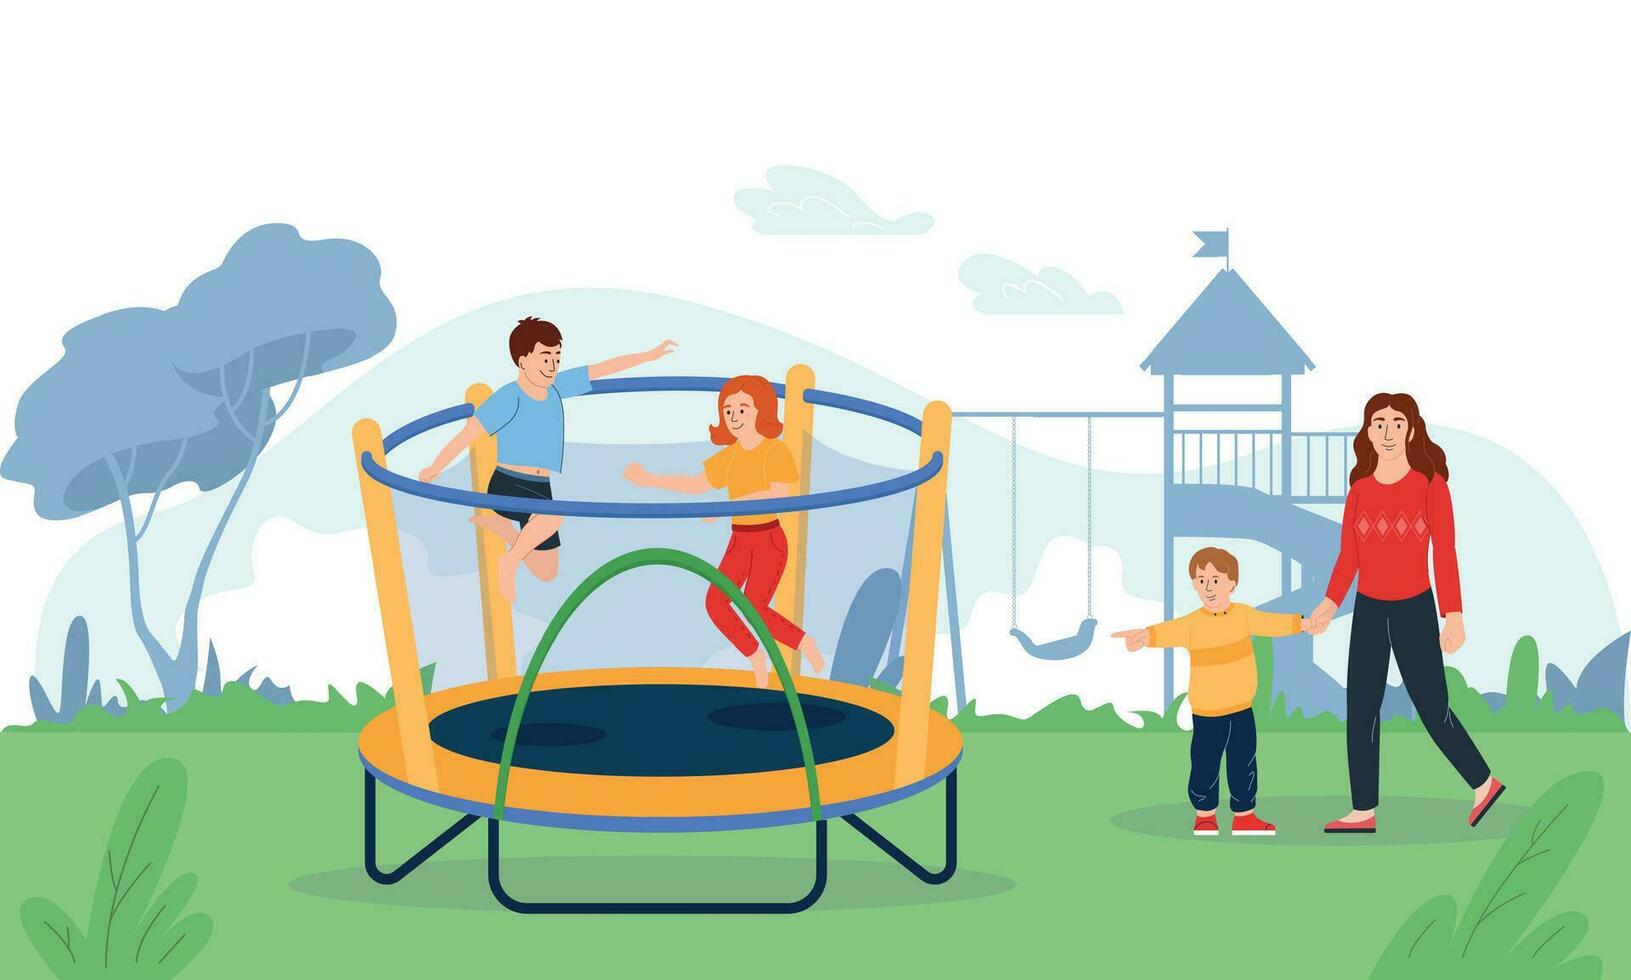 trampoline jumping illustratie vector